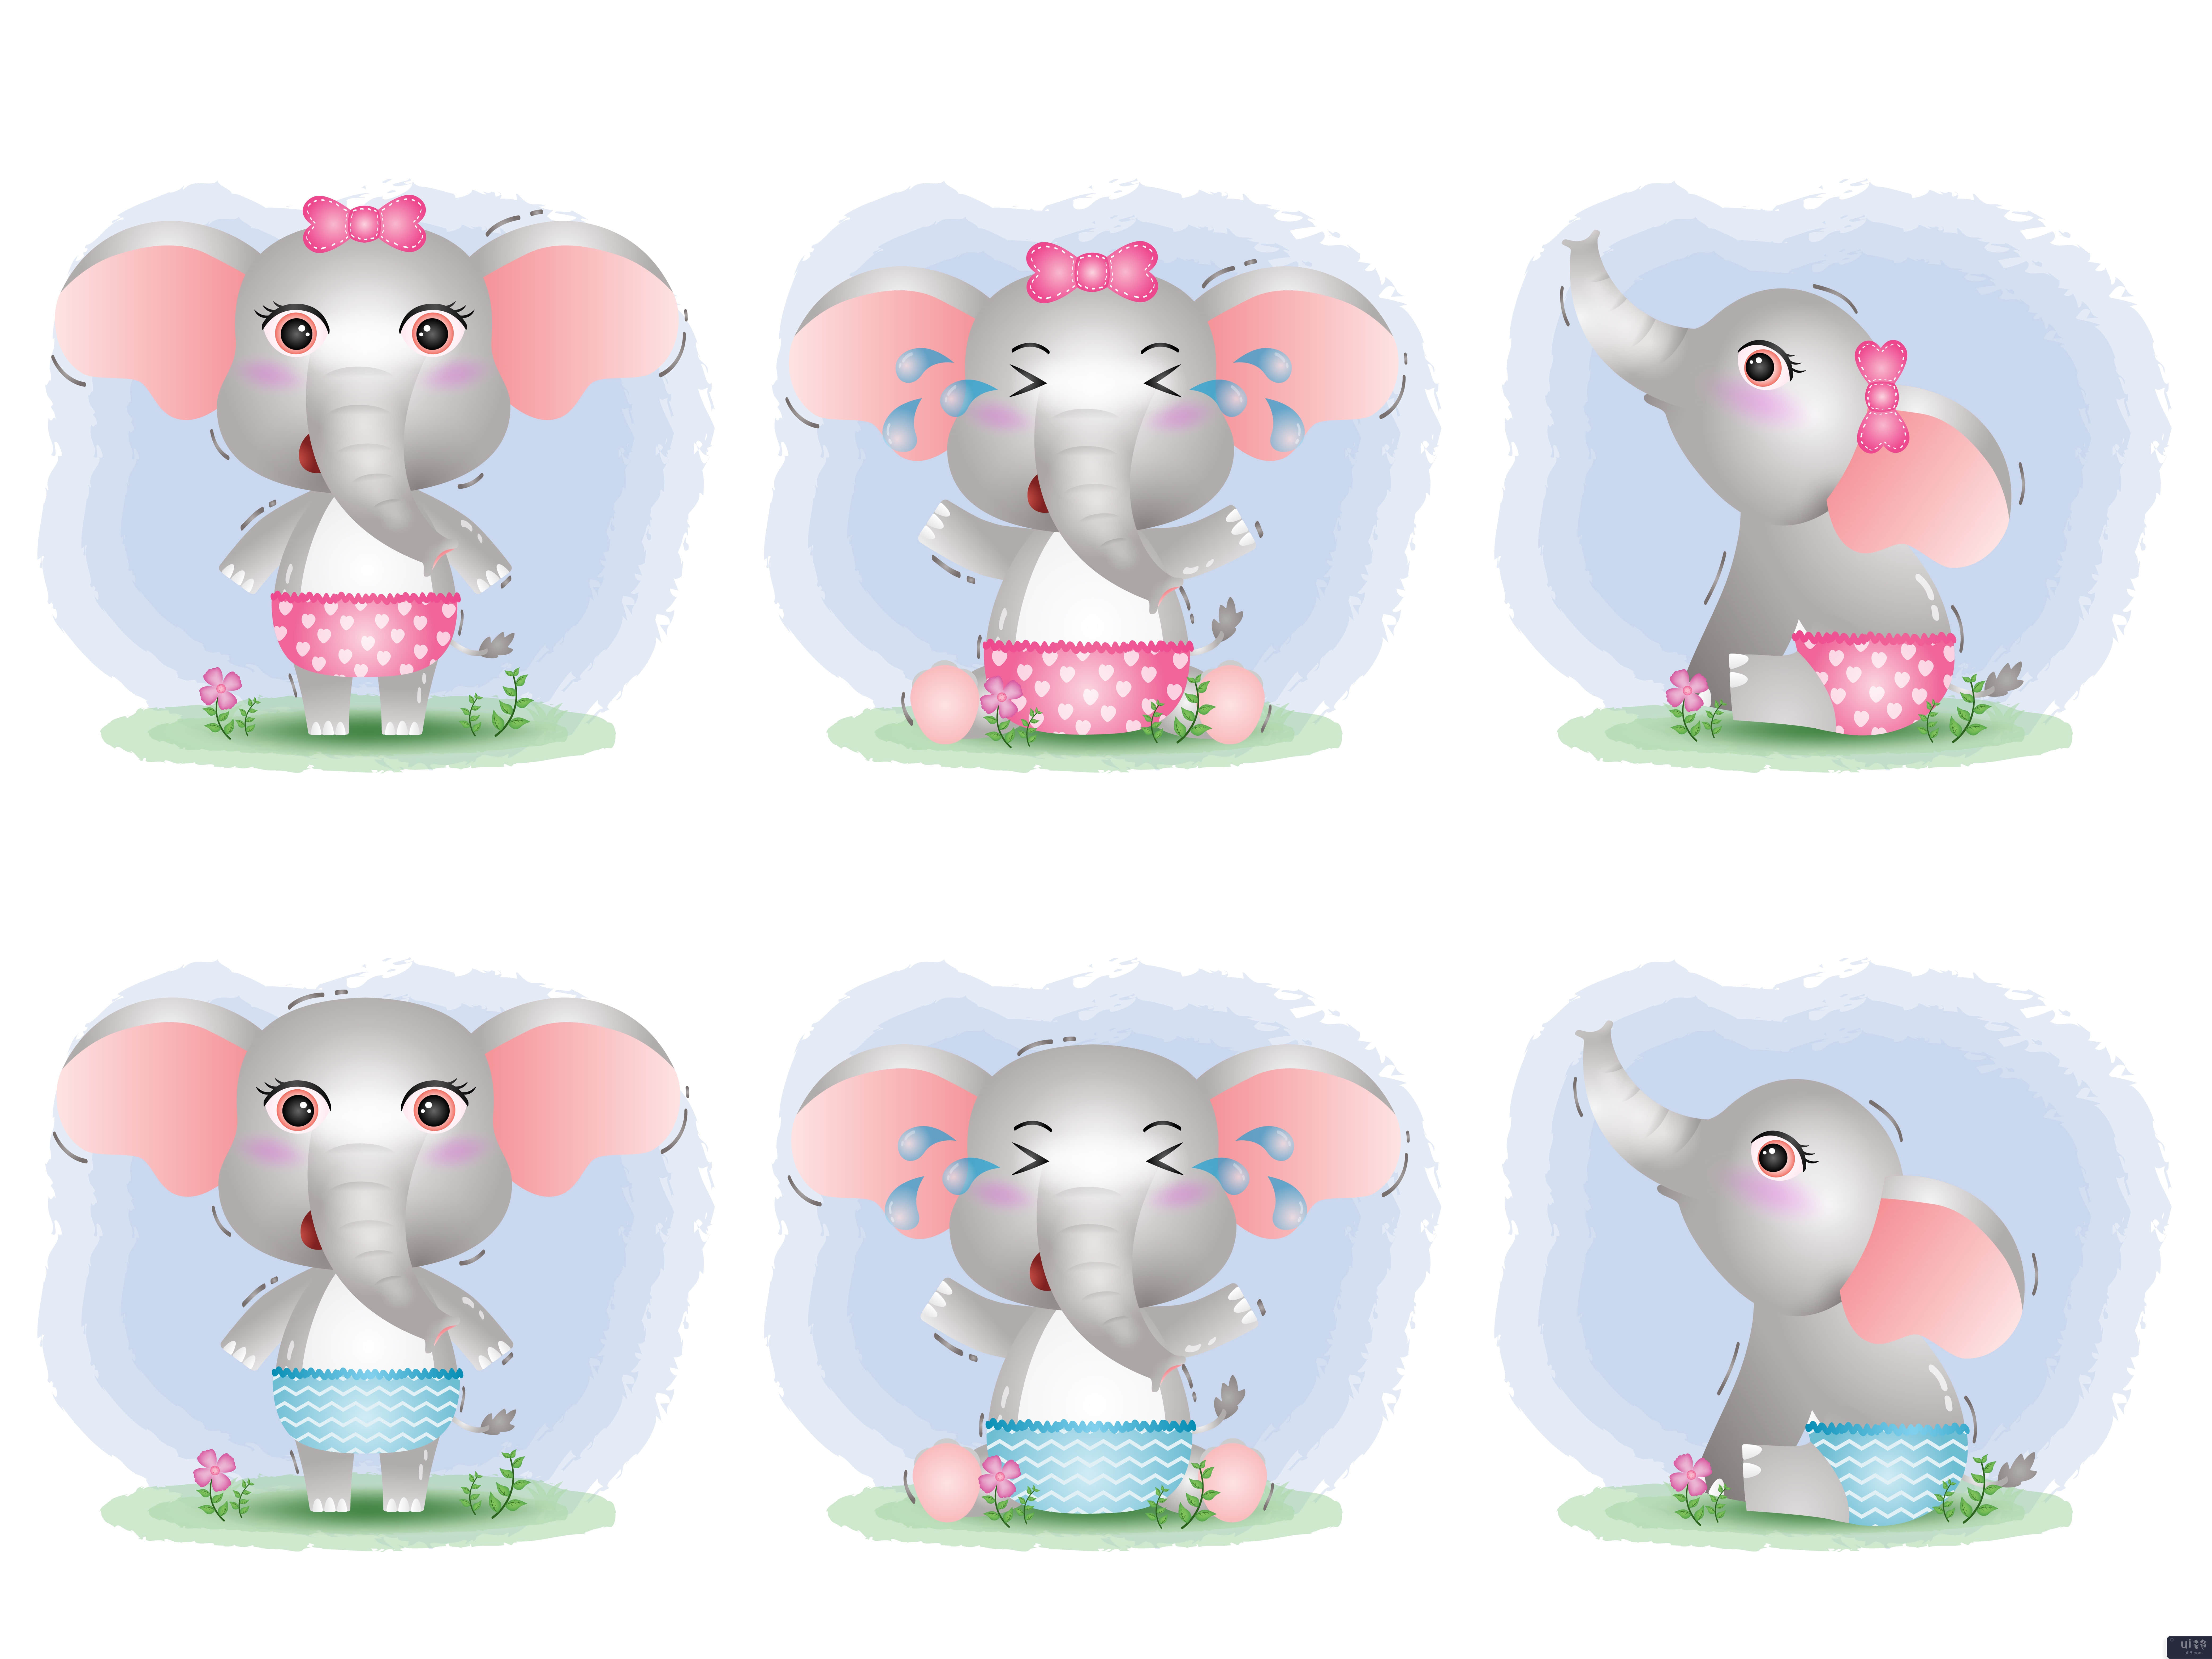 儿童风格的可爱小象系列(cute baby elephant collection in the children's style)插图2